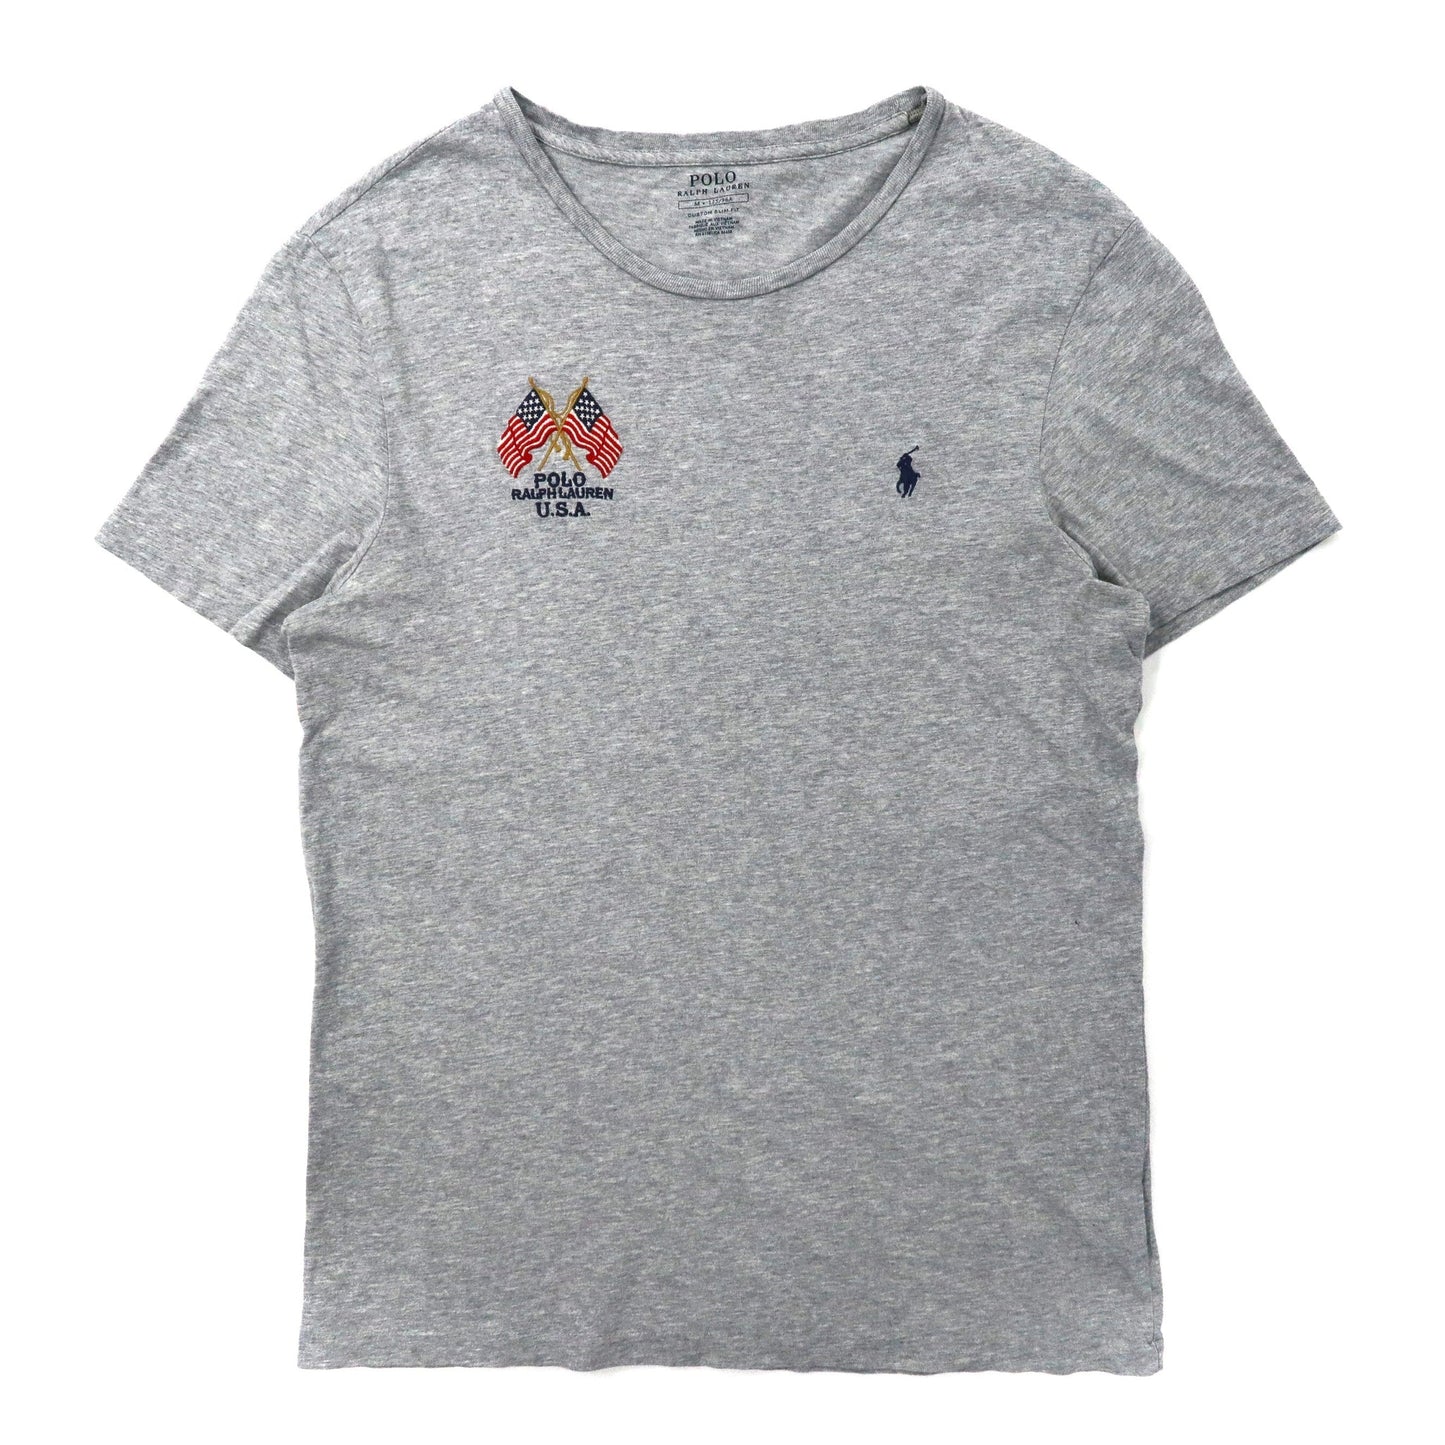 POLO RALPH LAUREN ロゴ刺繍Tシャツ 175 グレー コットン 星条旗 USA スモールポニー刺繍-Polo Ralph Lauren-古着